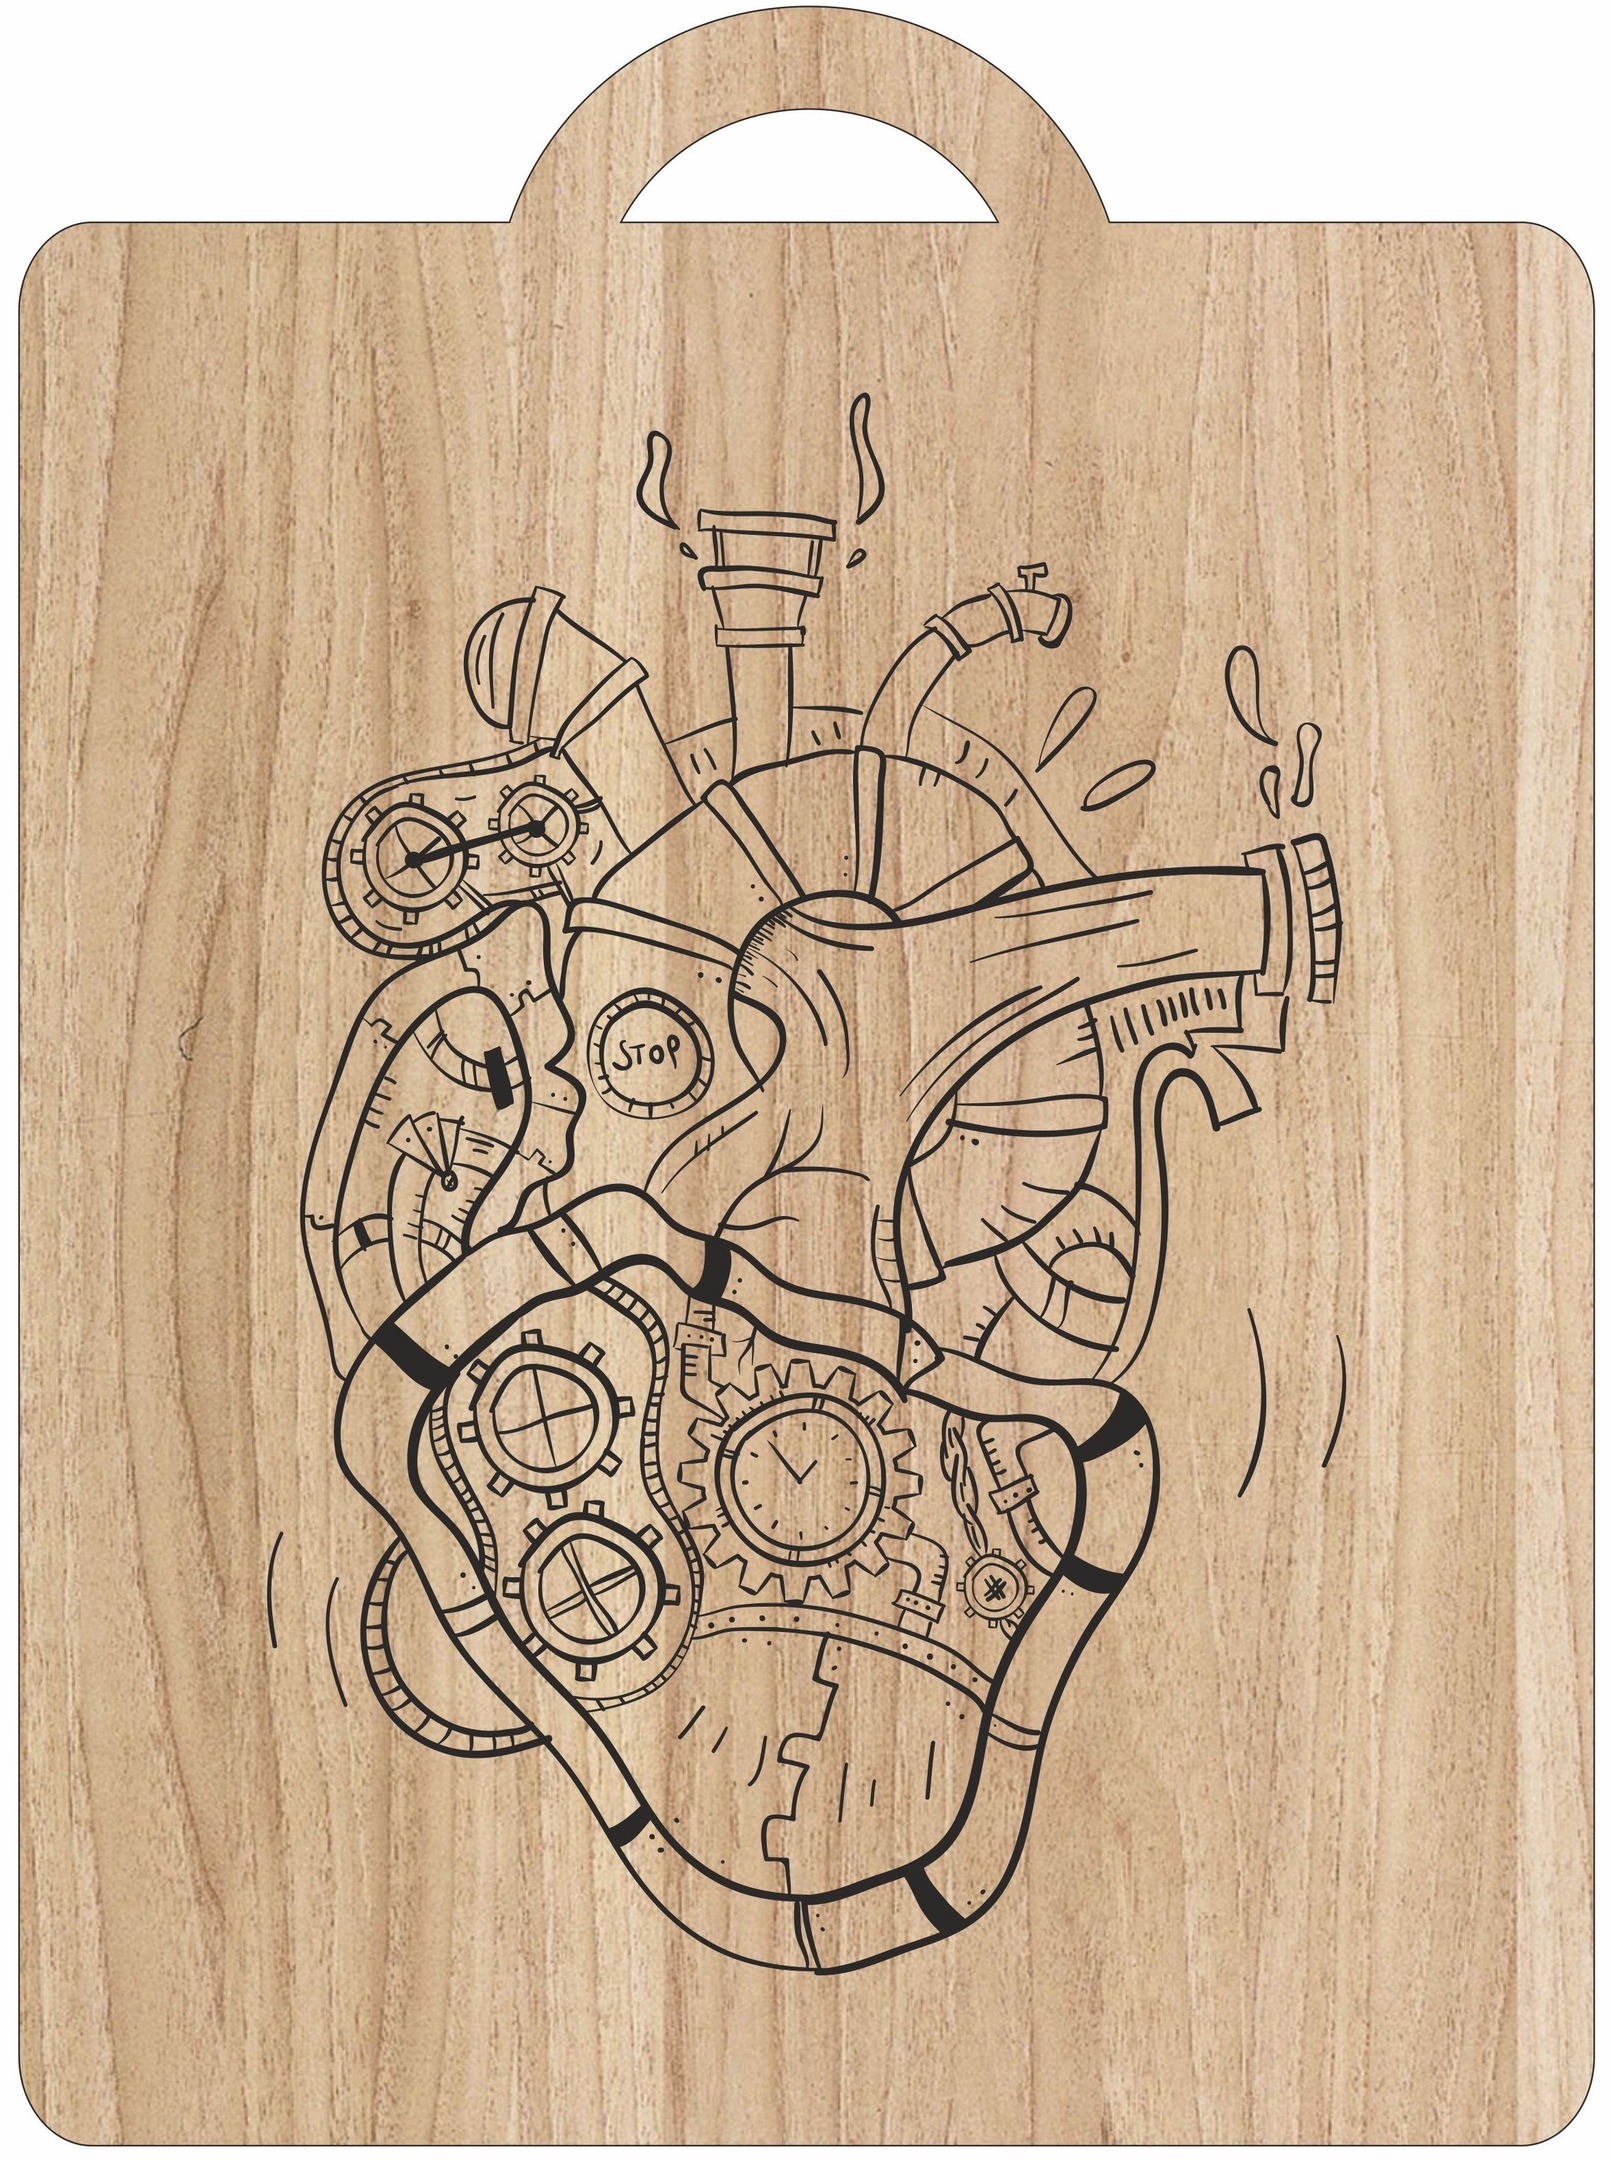 切割板上激光雕刻机械心脏艺术